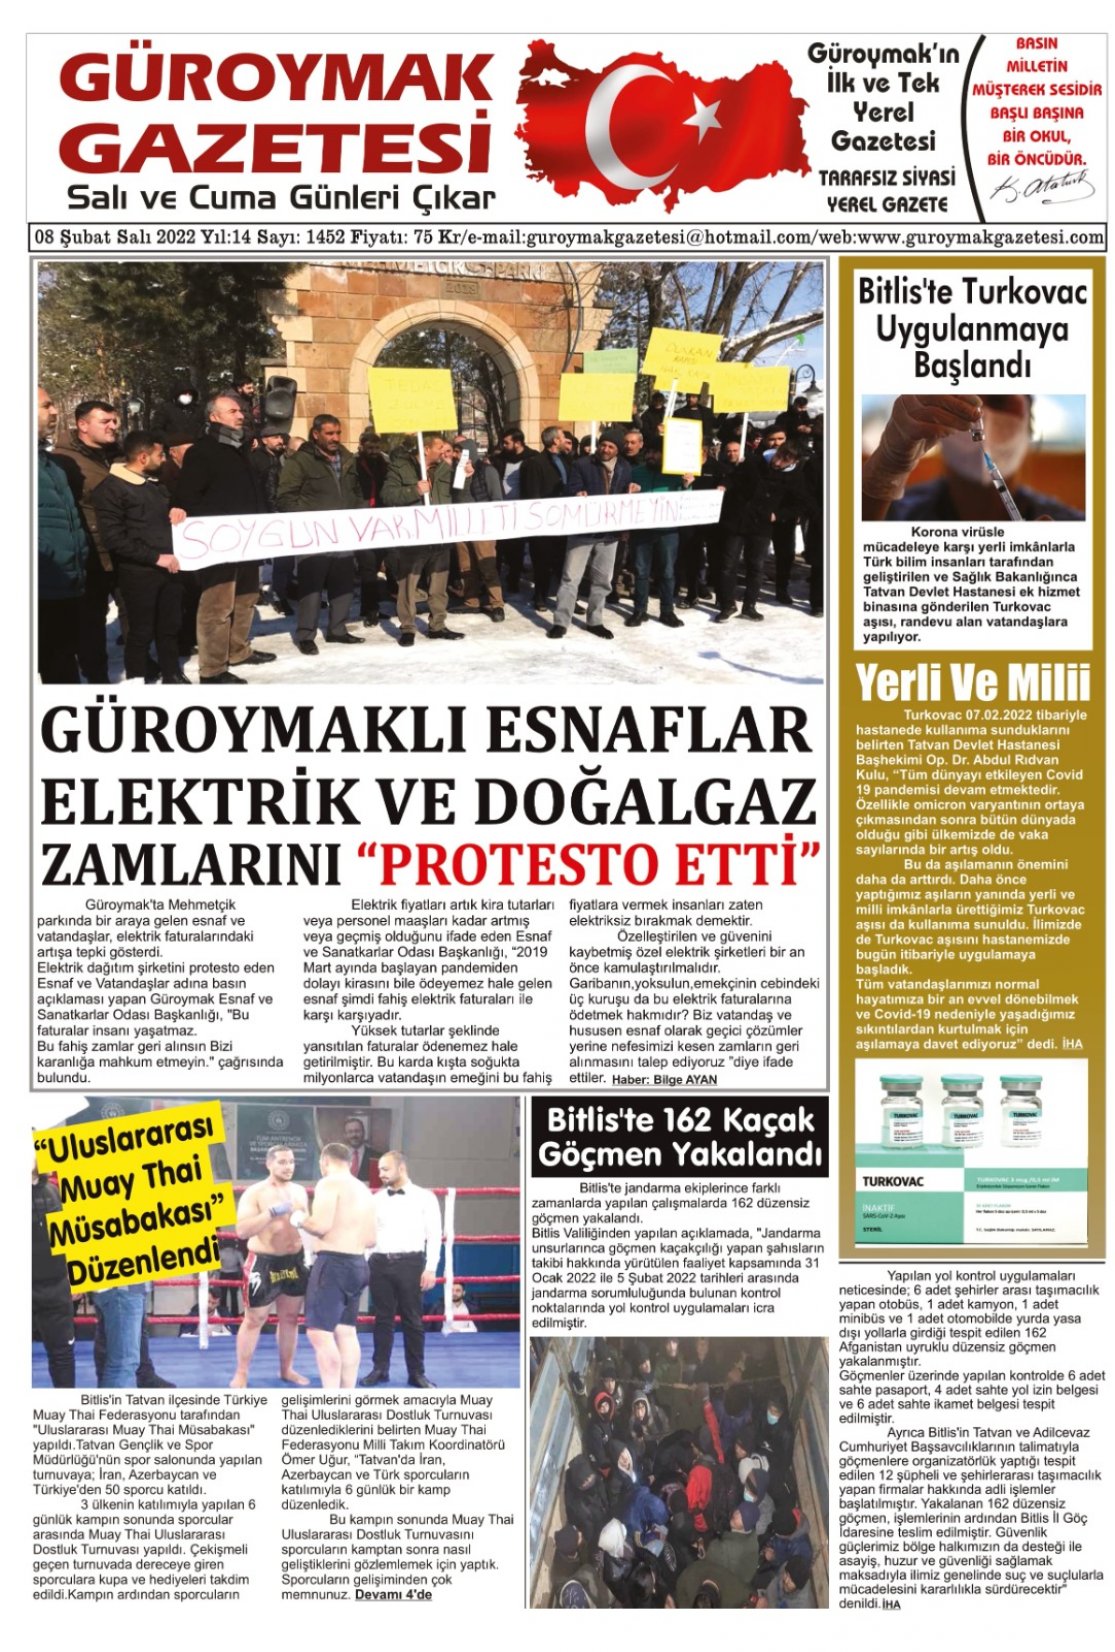 Güroymak Gazetesi WhatsApp Image 2022-02-08 at 01.01.36.jpeg Sayılı Gazete Küpürü